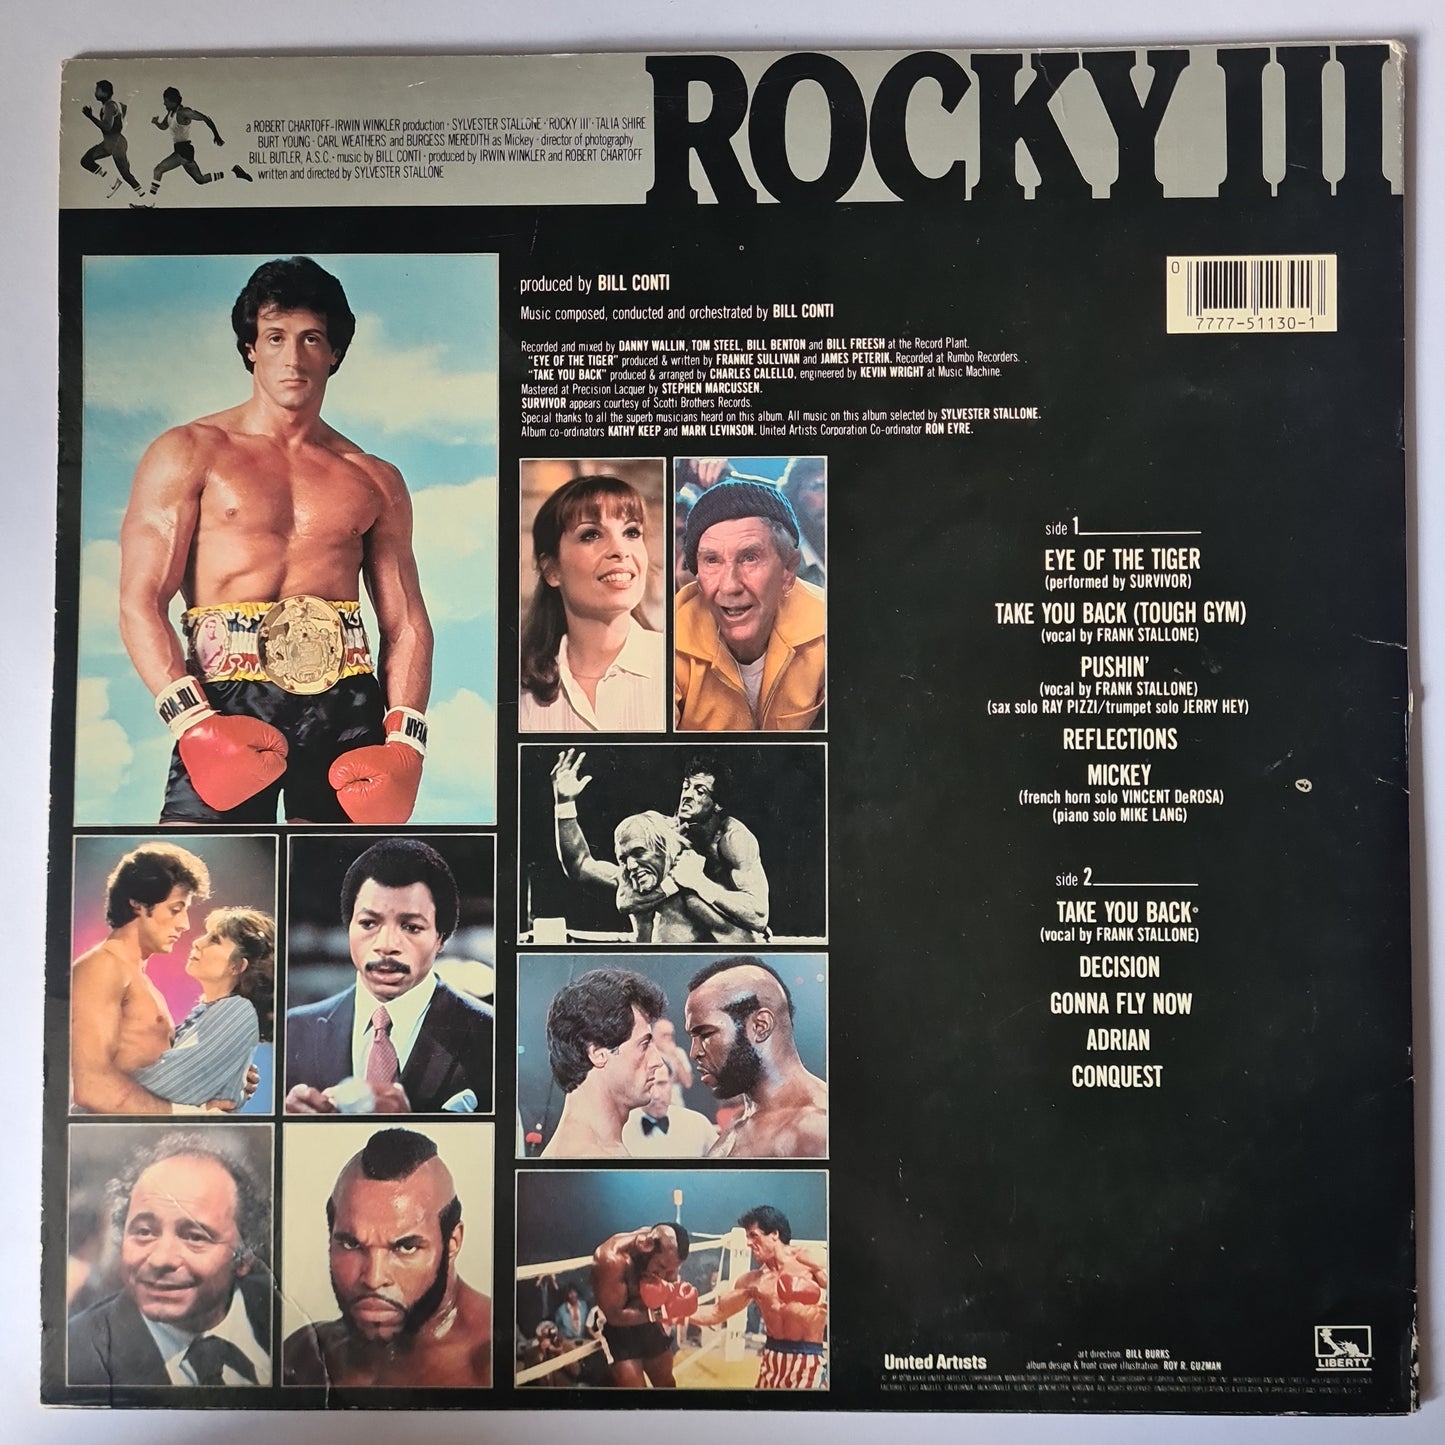 Bill Conti – Rocky III (Original Motion Picture Soundtrack) - 1982 - Vinyl Record